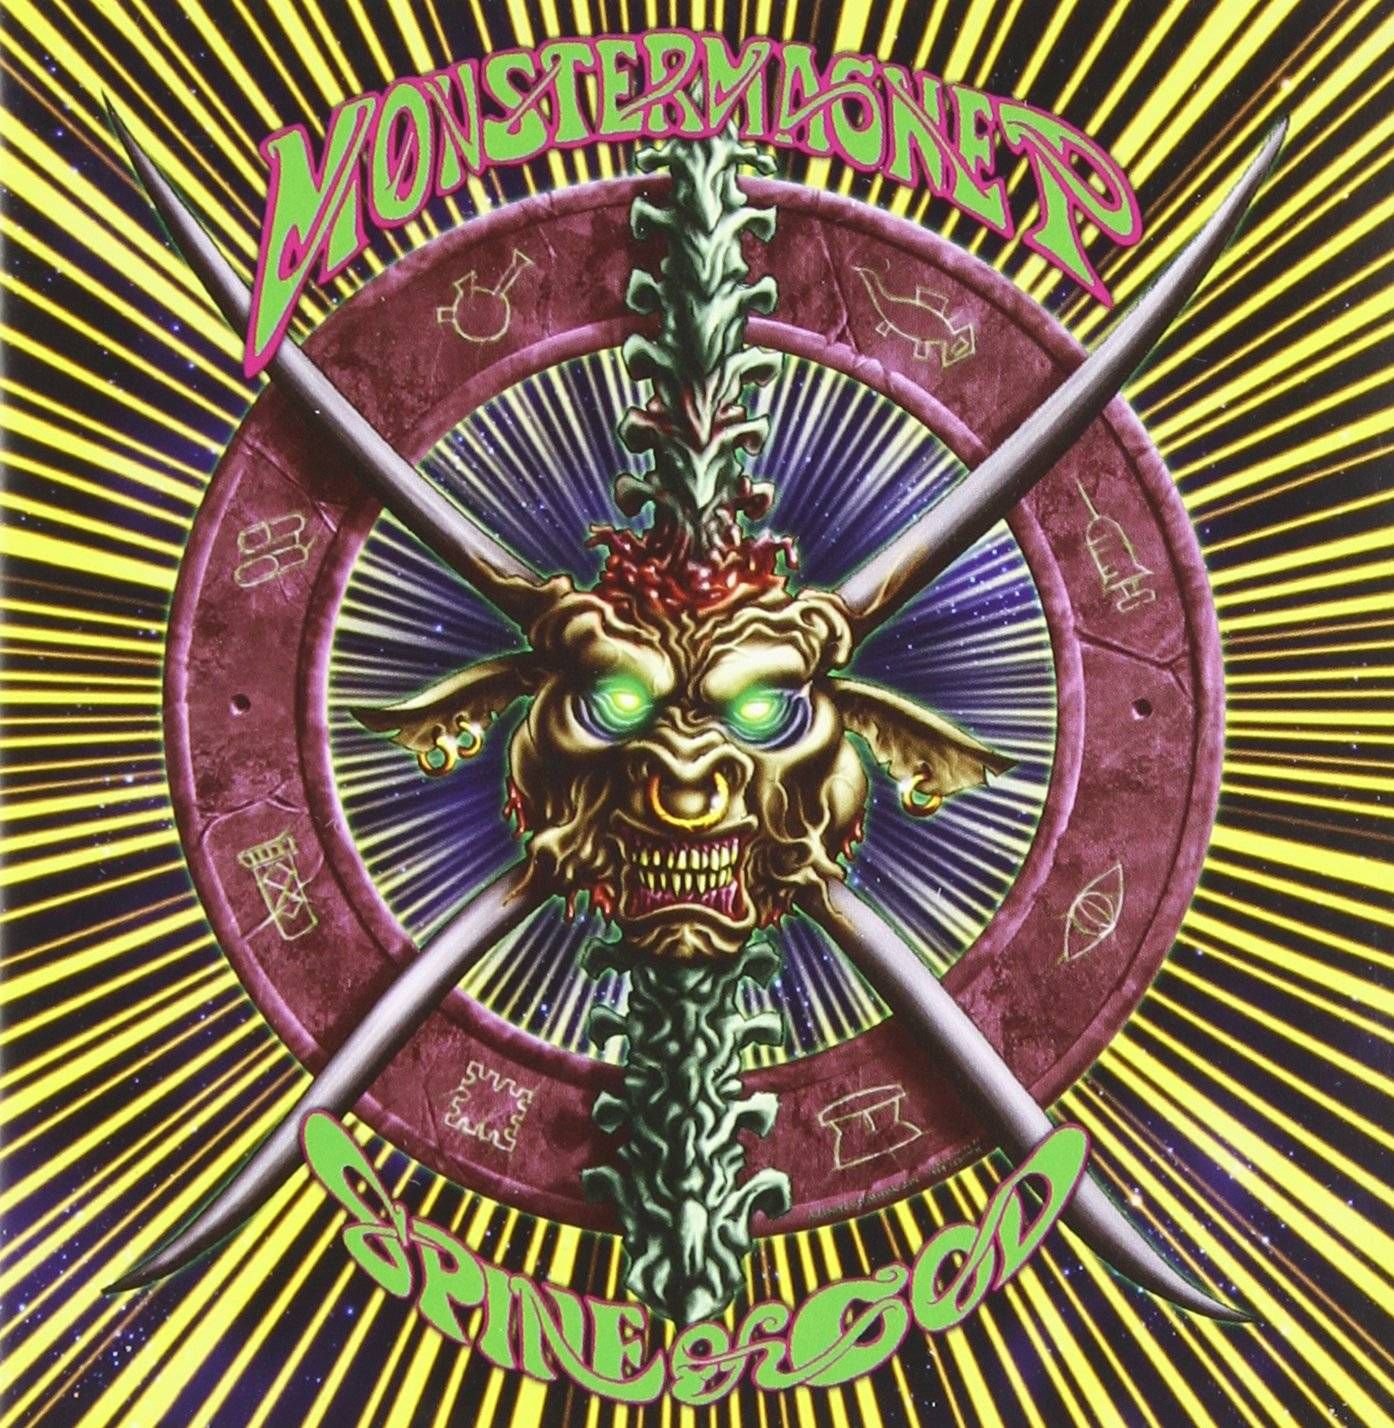 Monster Magnet - Spine Of God (Ltd. Ed. 2017 gatefold reissue with bonus track) - Vinyl - New